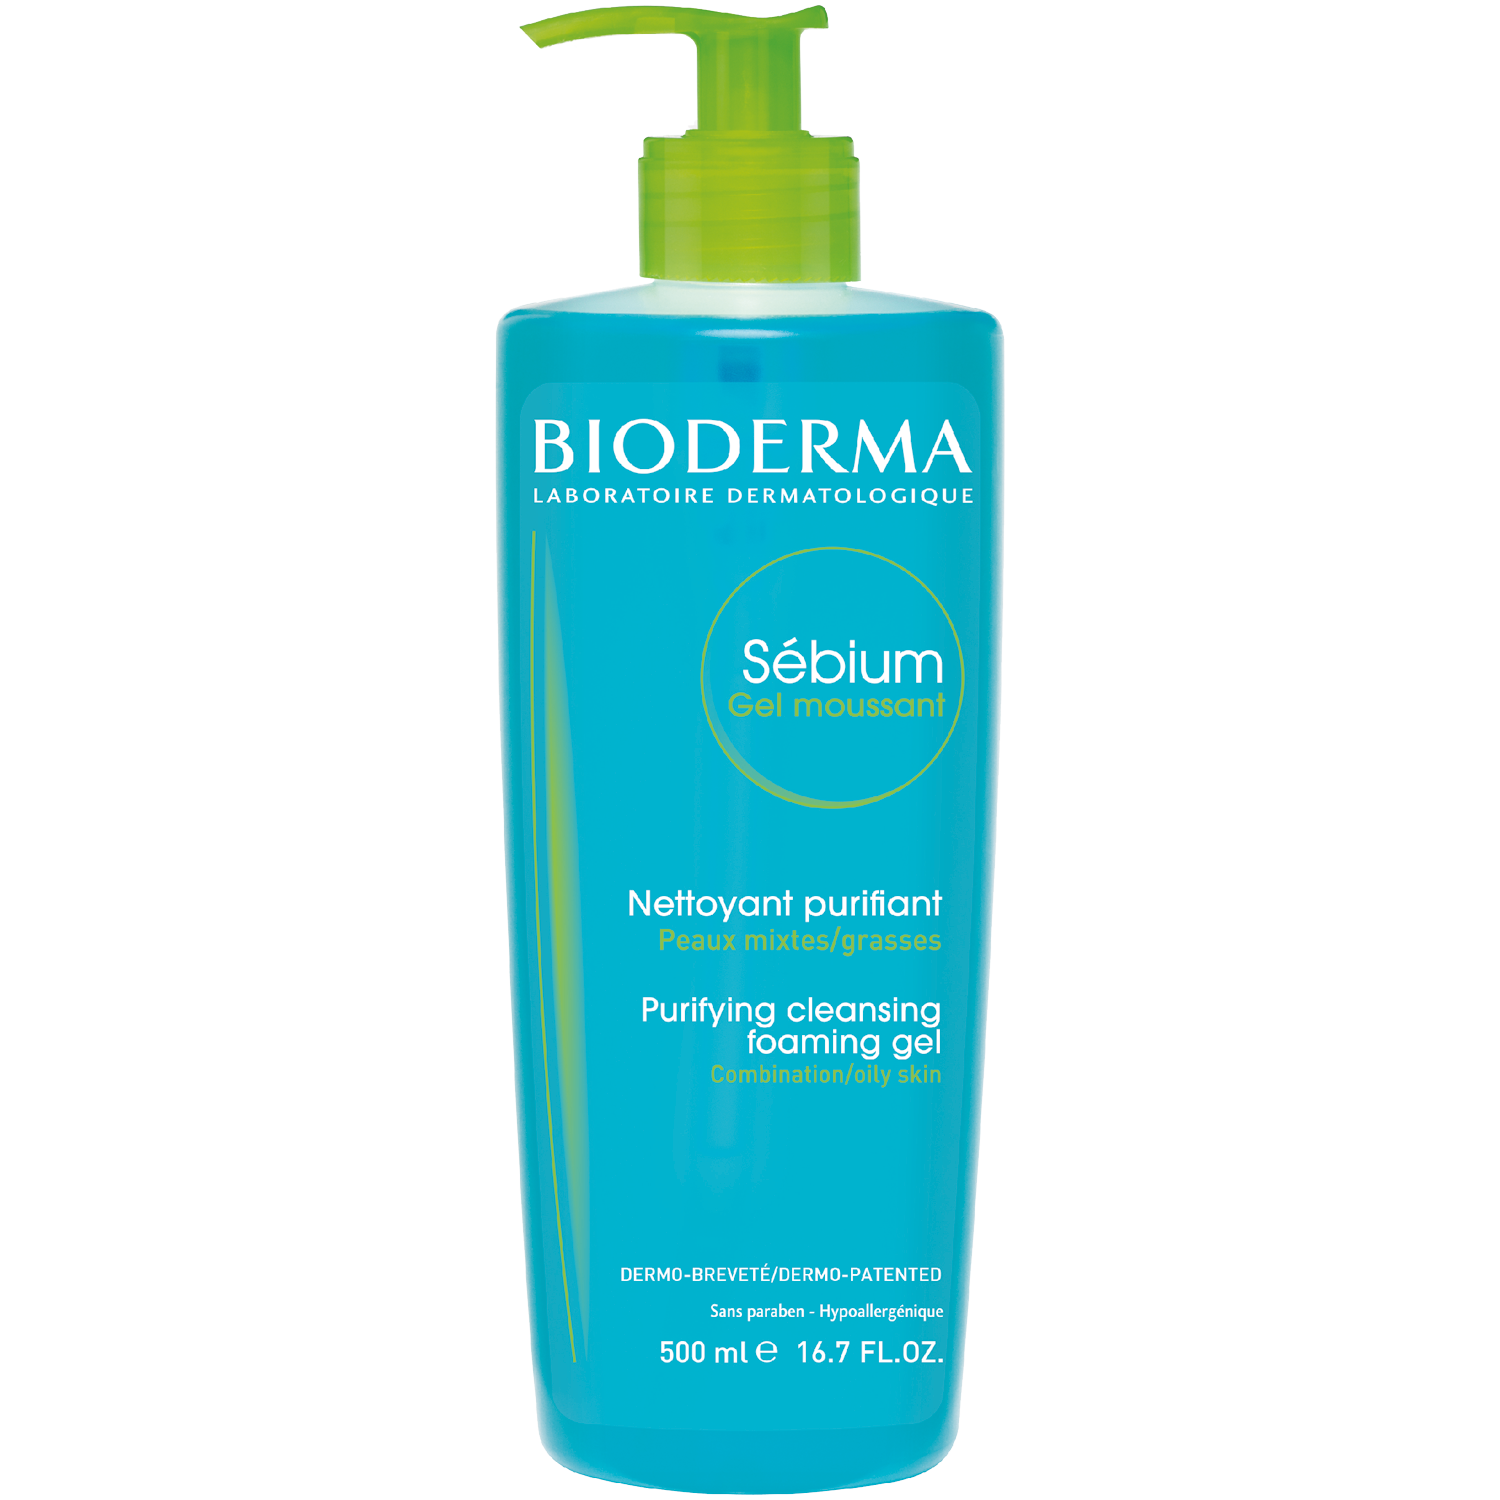 Bioderma Sebium Gel Moussant гель для умывания антибактериальный, 500 мл гель для умывания bioderma sebium 500 мл